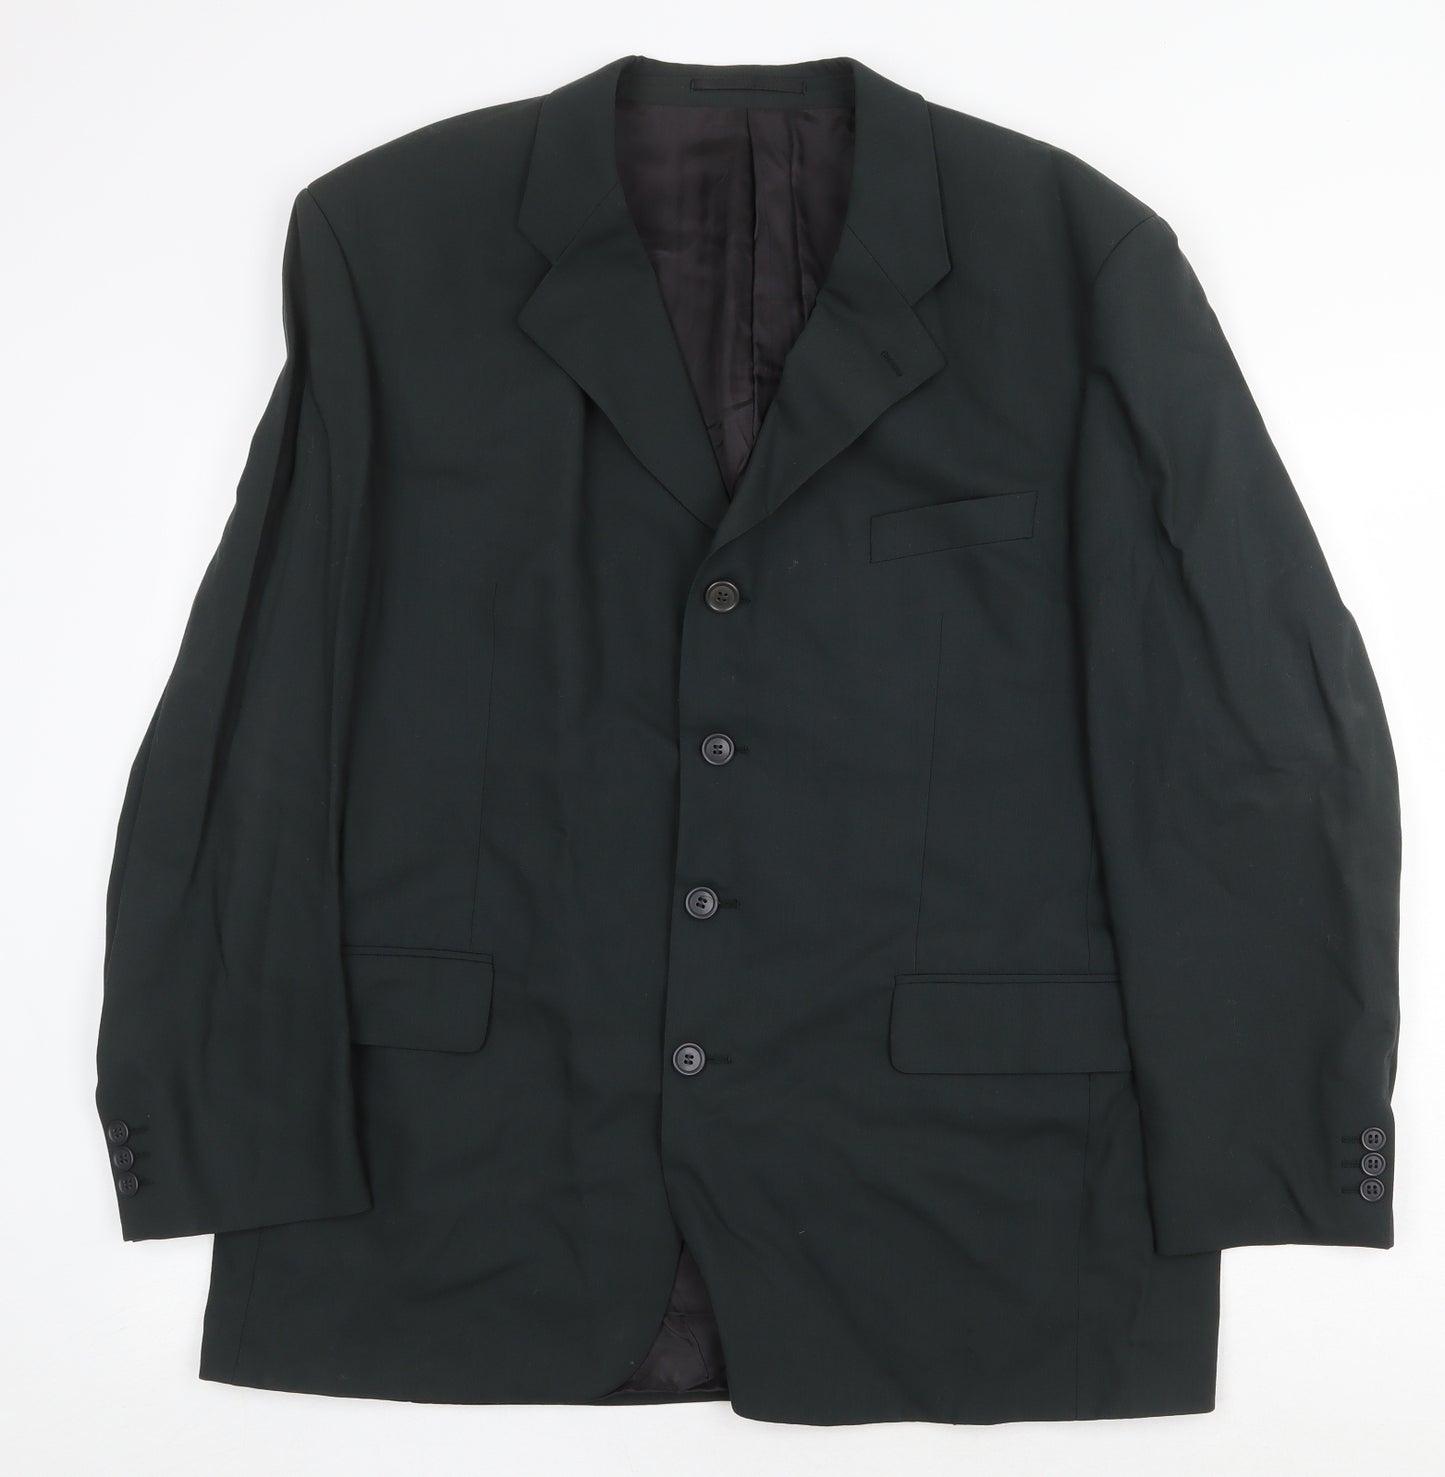 Tom English Mens Green Wool Jacket Suit Jacket Size 44 Regular